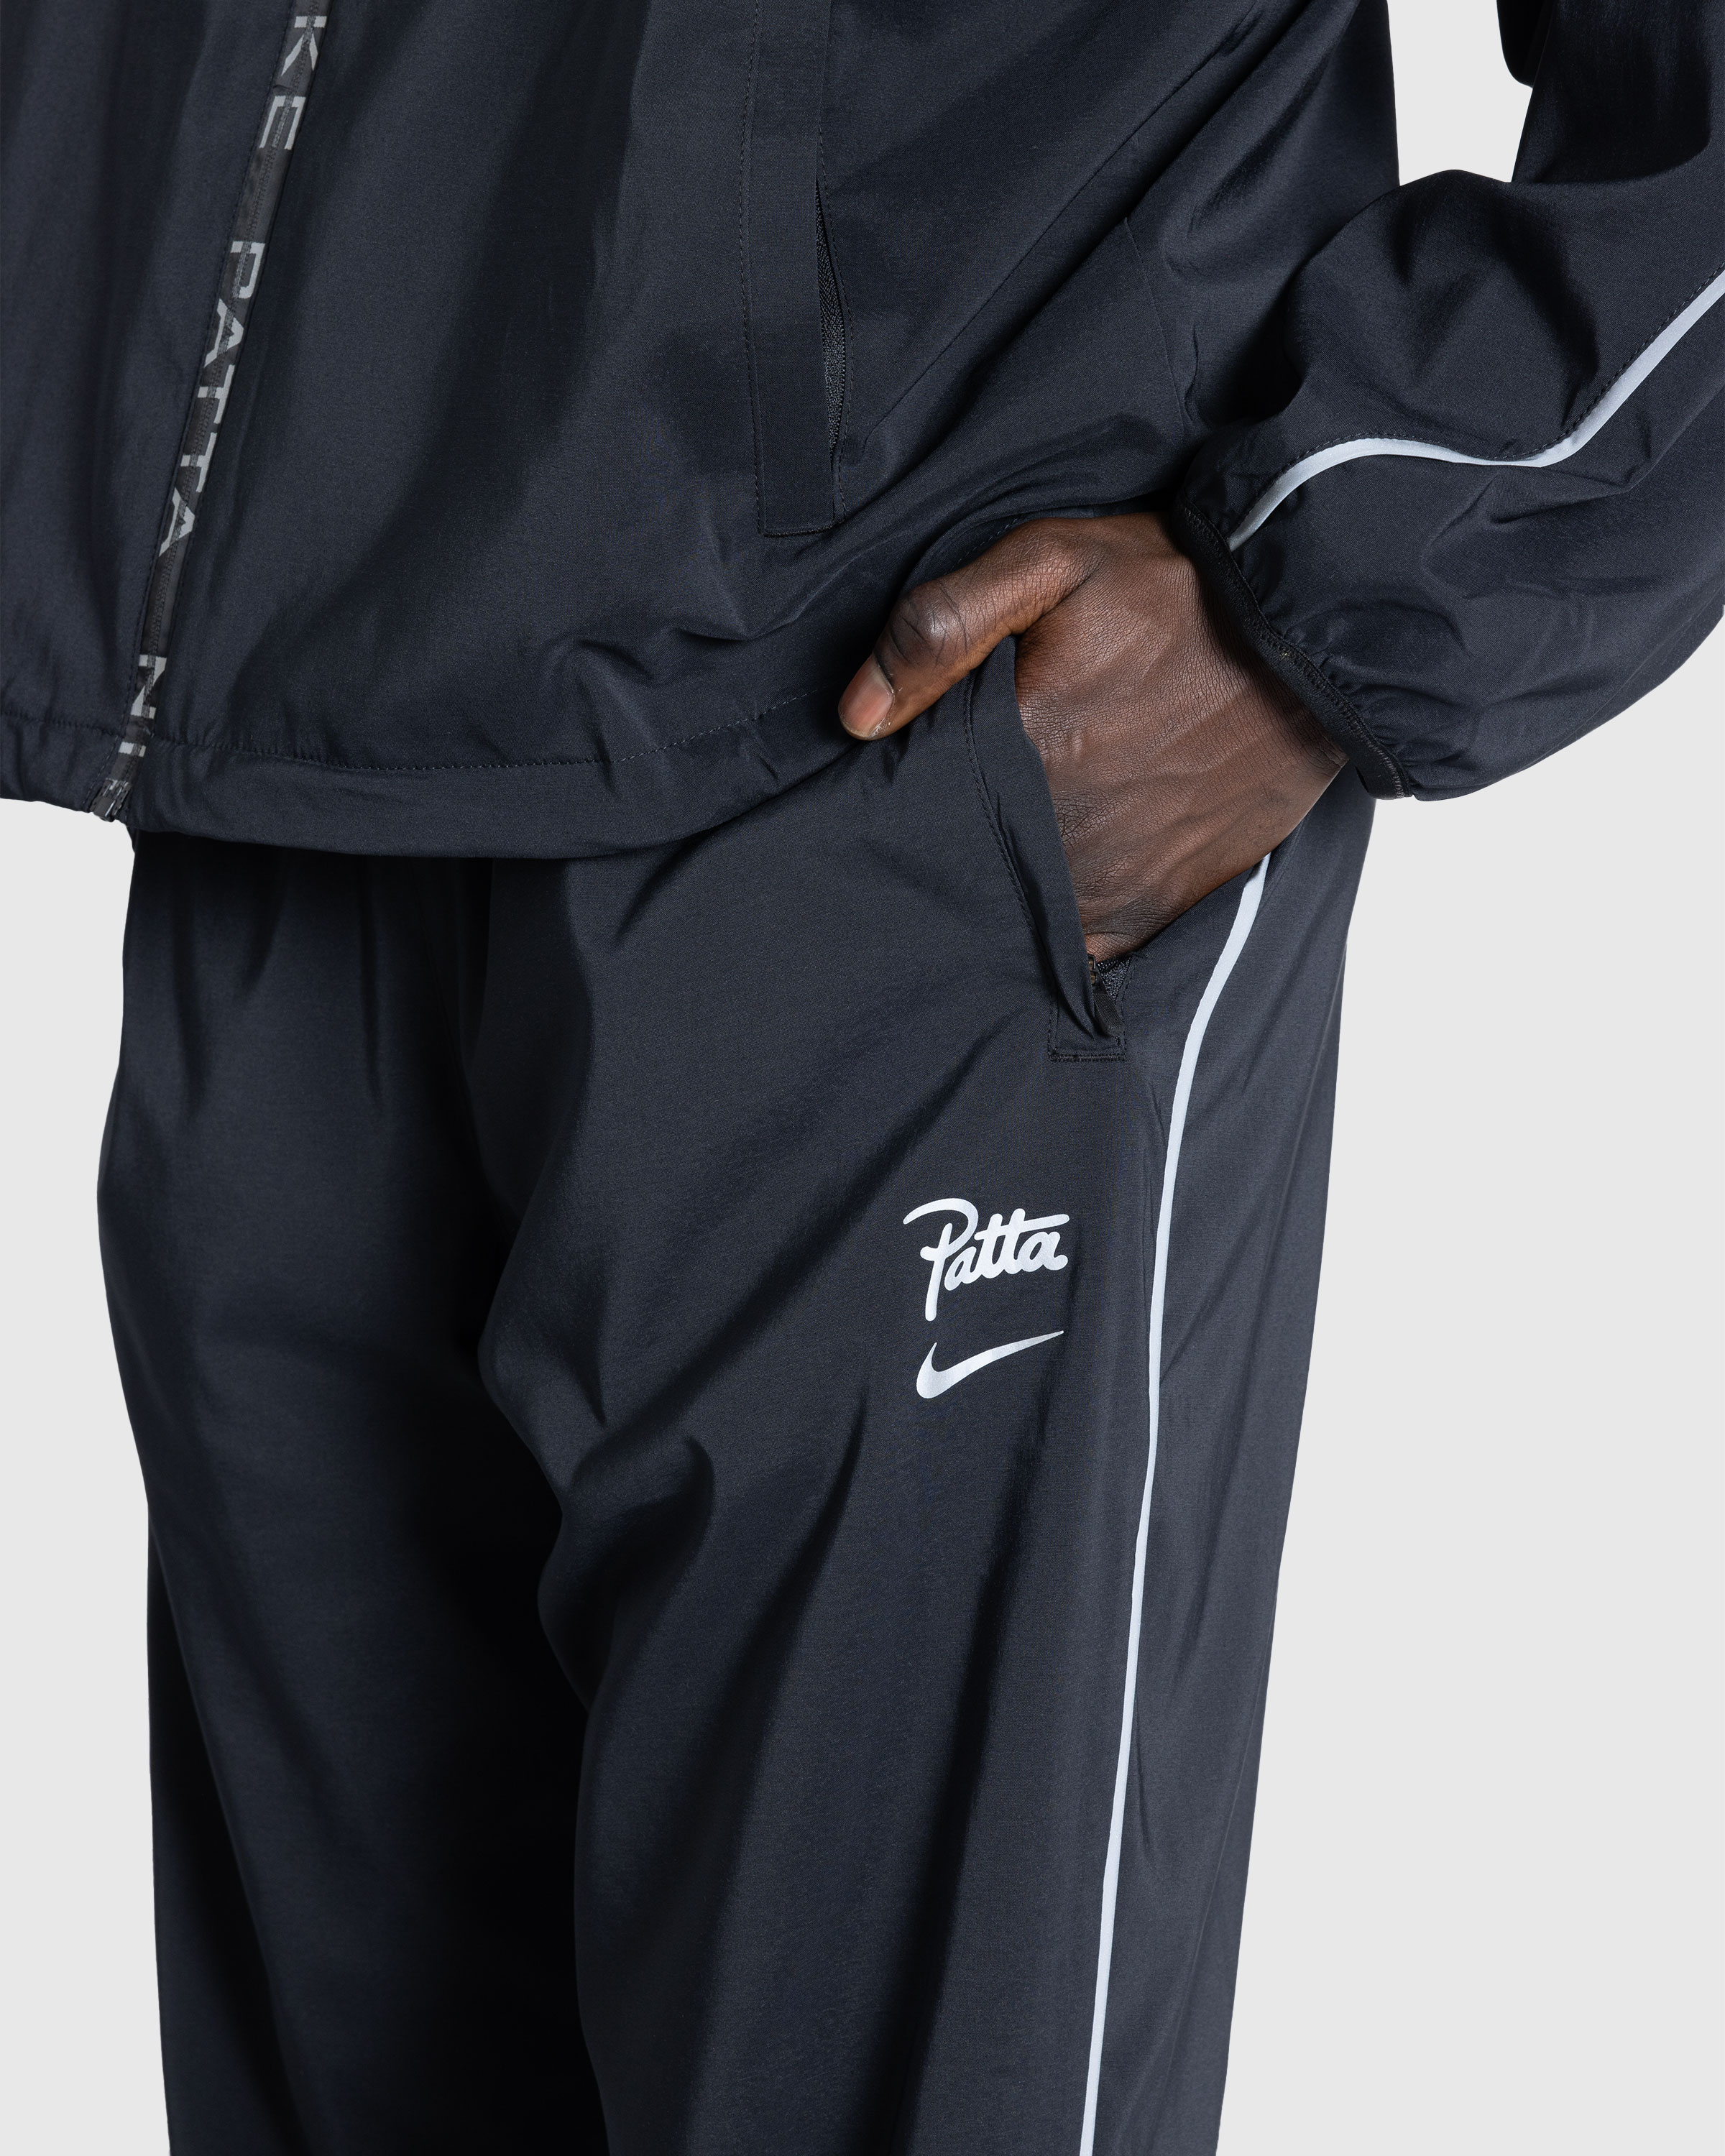 Nike x Patta – Men's Track Pants Black - Track Pants - Black - Image 5